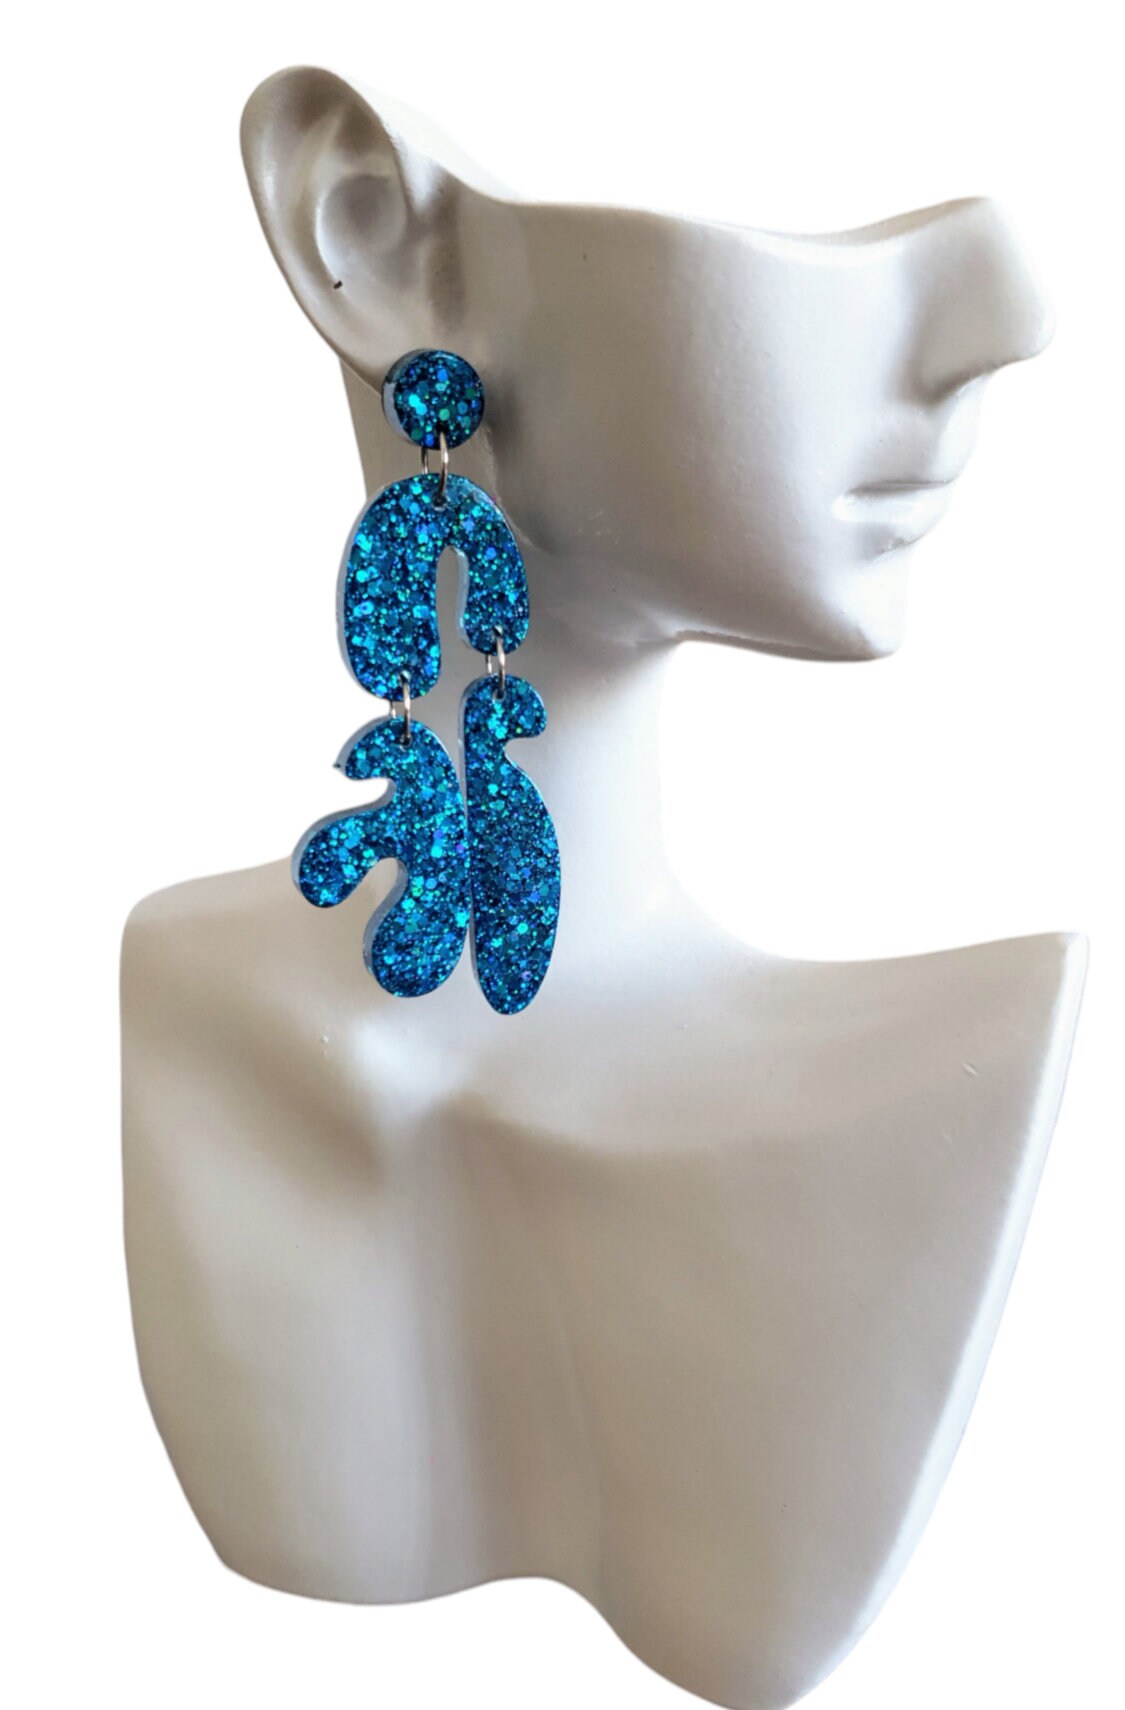 Unique Blue Multi Shape Dangle Drop Earrings, Blue Glitter, Statement Handmade Resin Earrings